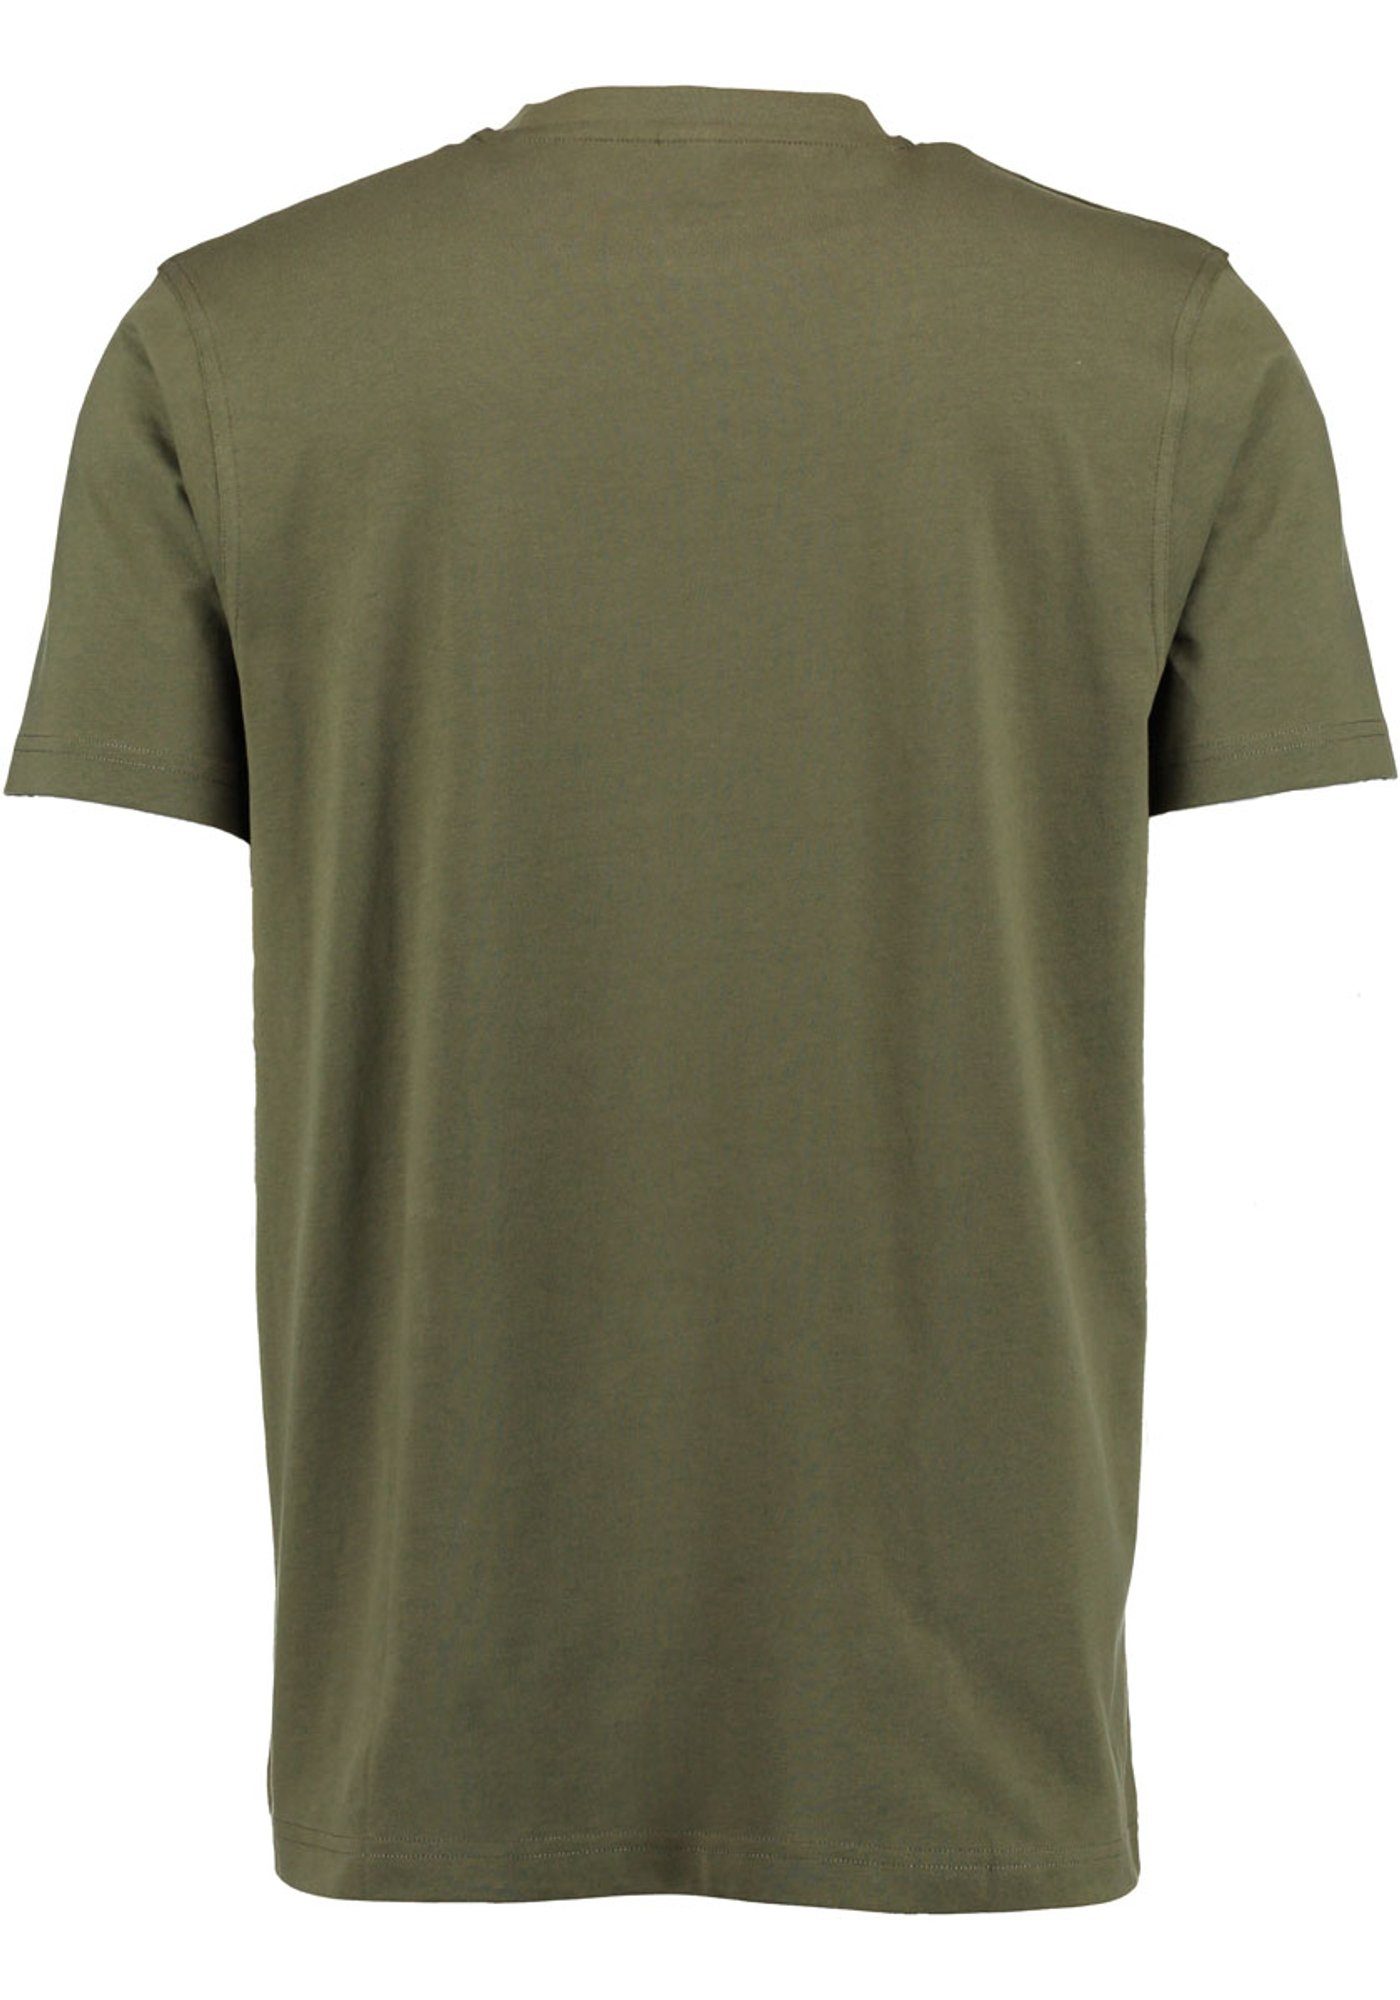 T-Shirt OS-Trachten Kurzarm Jetewi Jagdshirt mit Hirsch-Druck